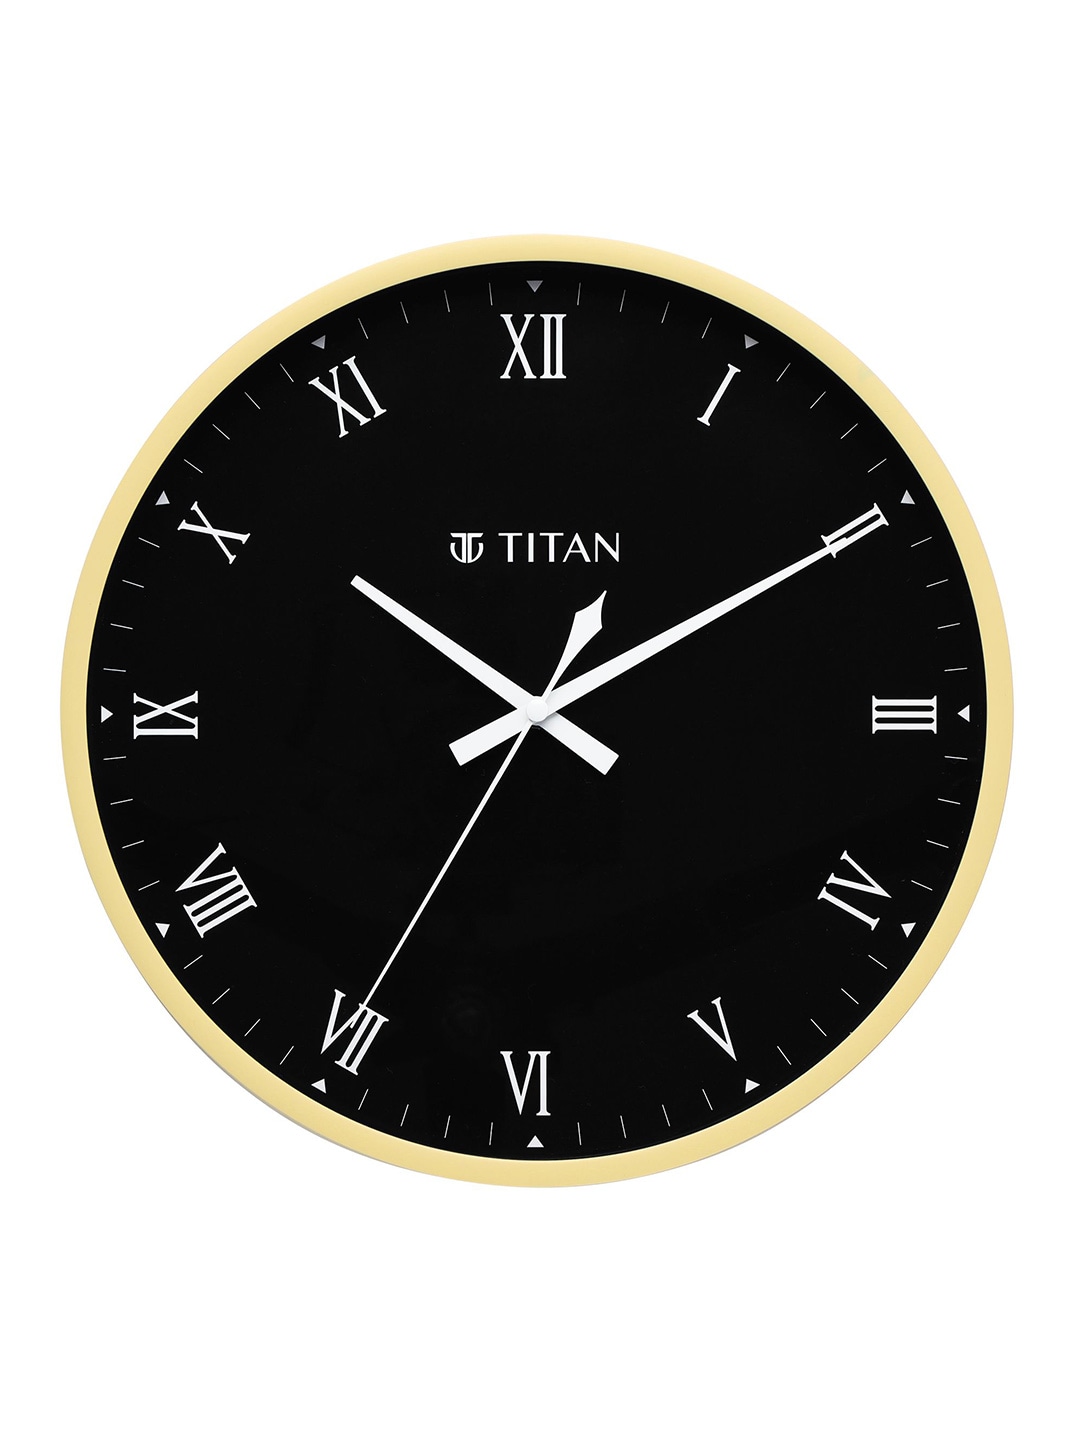 Titan Cream-Coloured & Black Contemporary Wall Clock Price in India